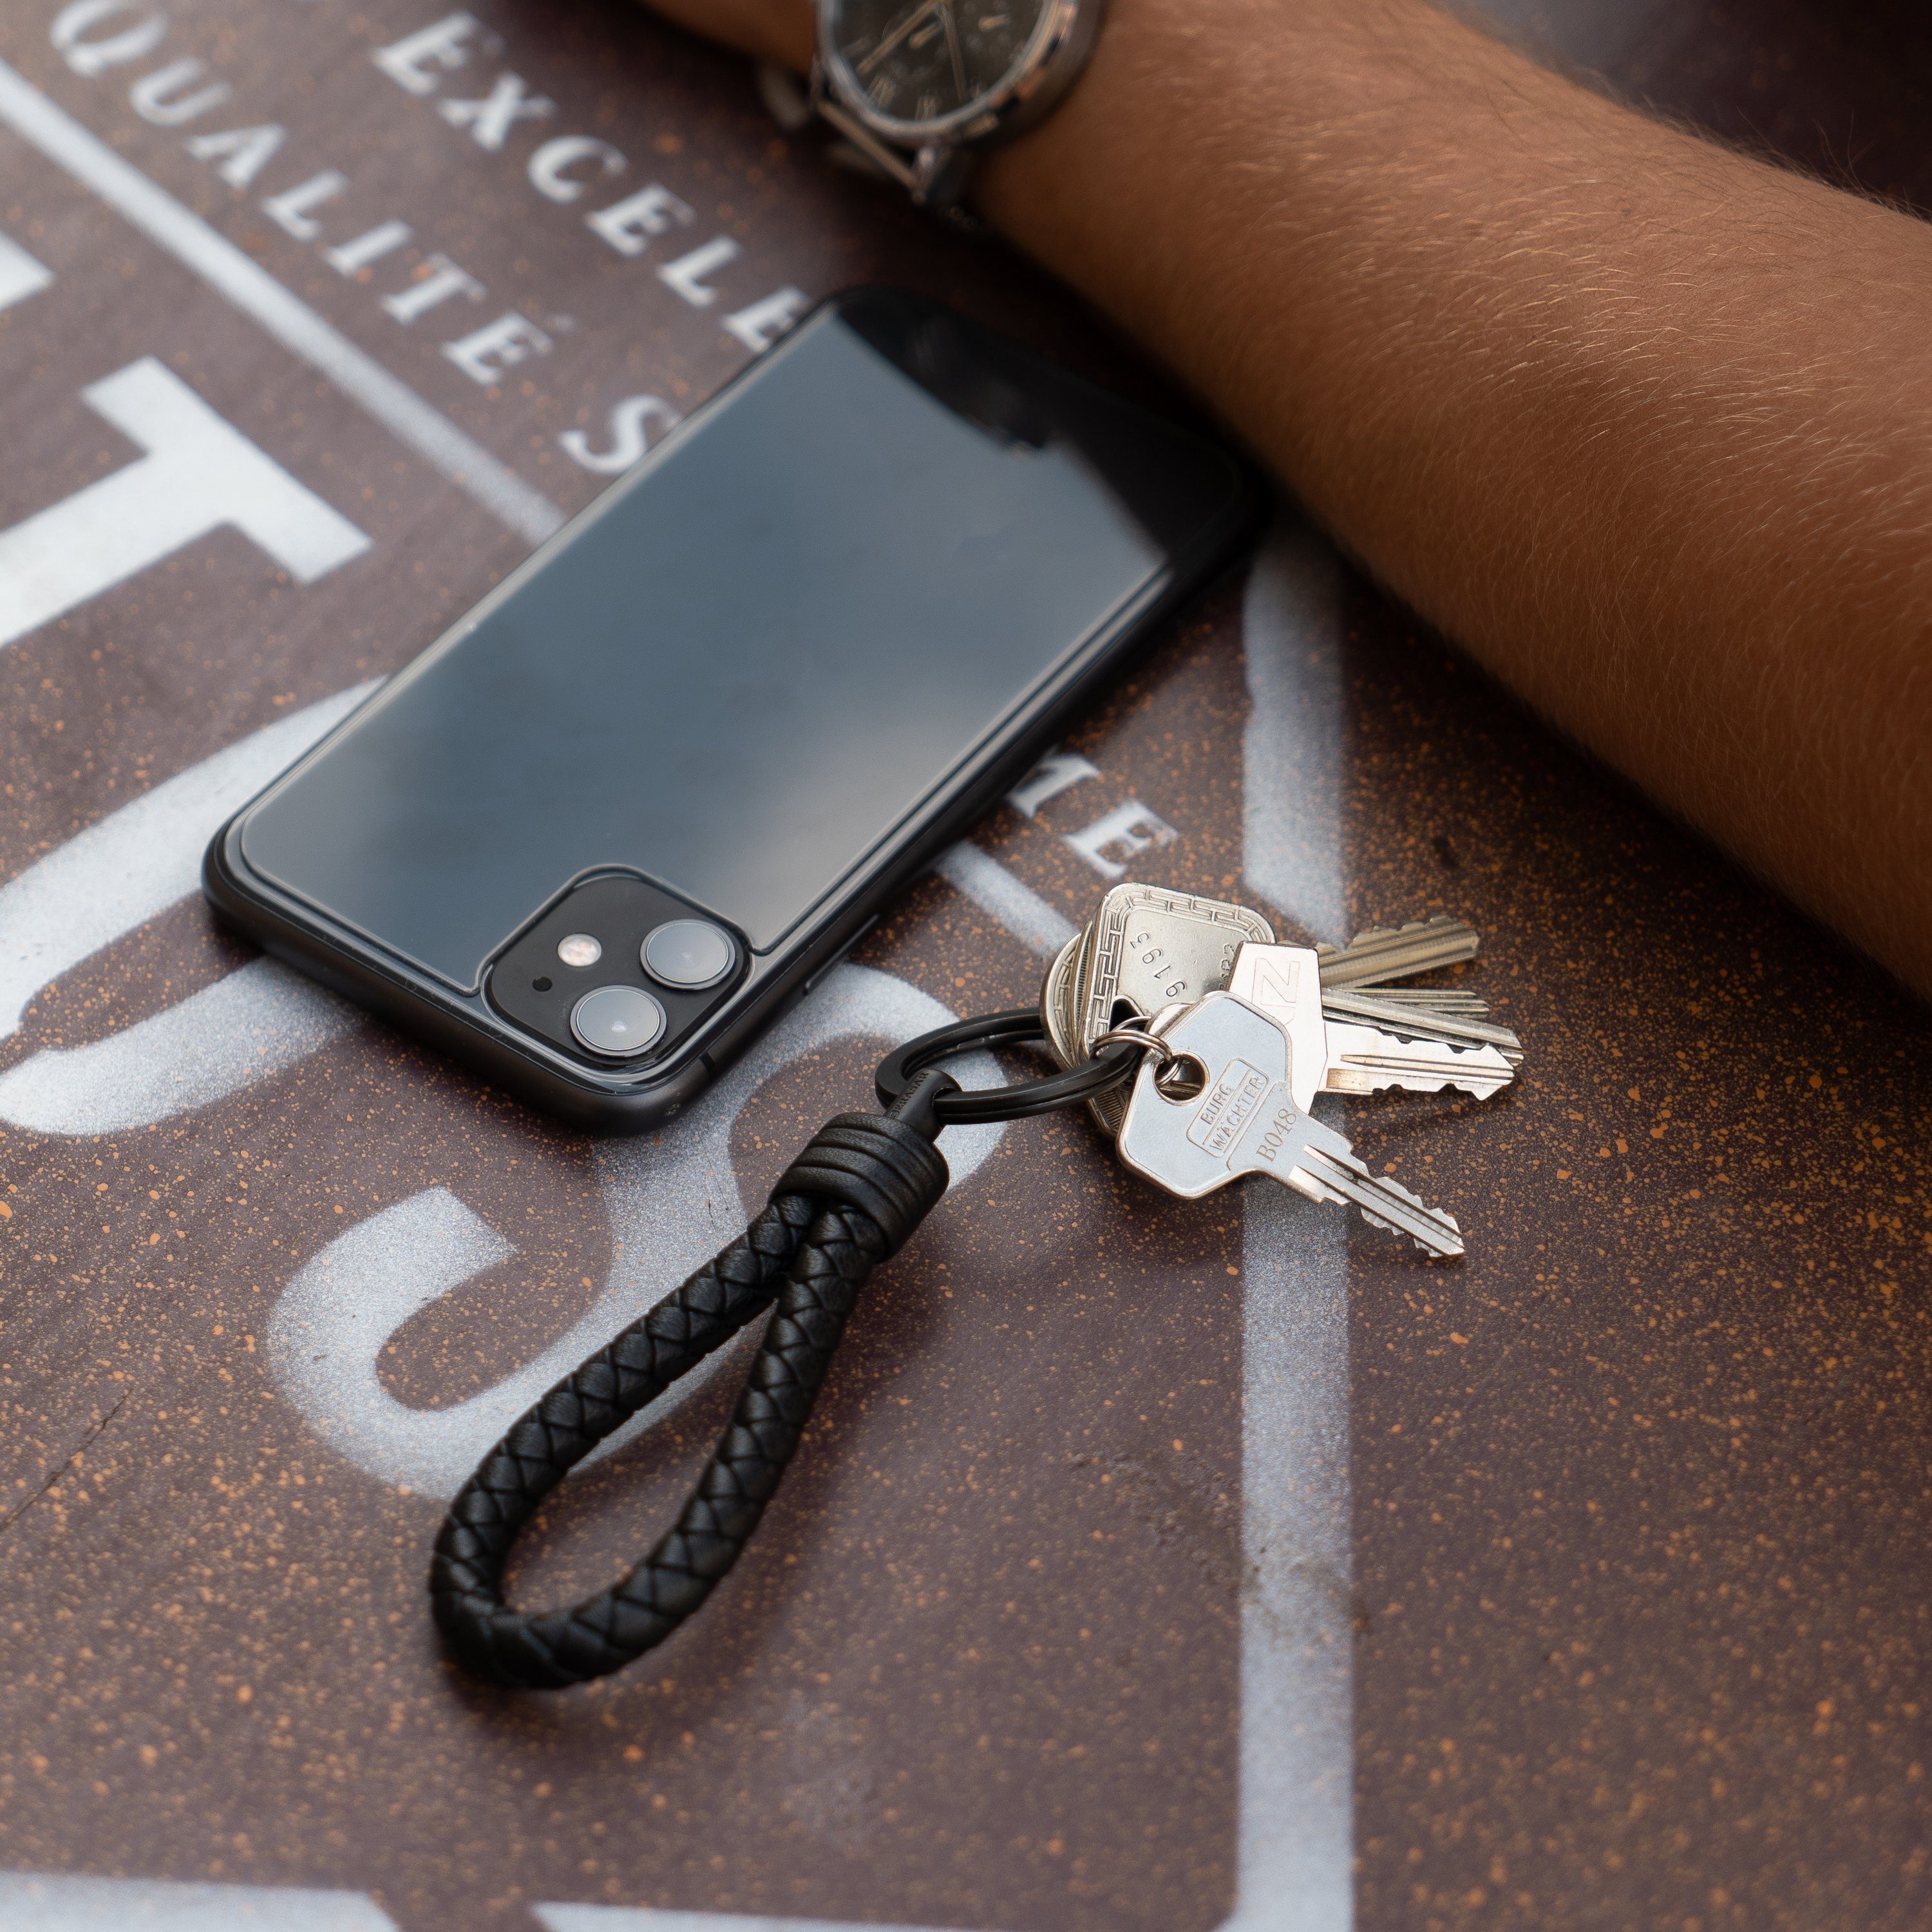 Schwarz Zusatzringe SERASAR Schlüsselanhänger "Strong" (1-tlg), Schlüssel Schlüsselanhänger Leder für kleine